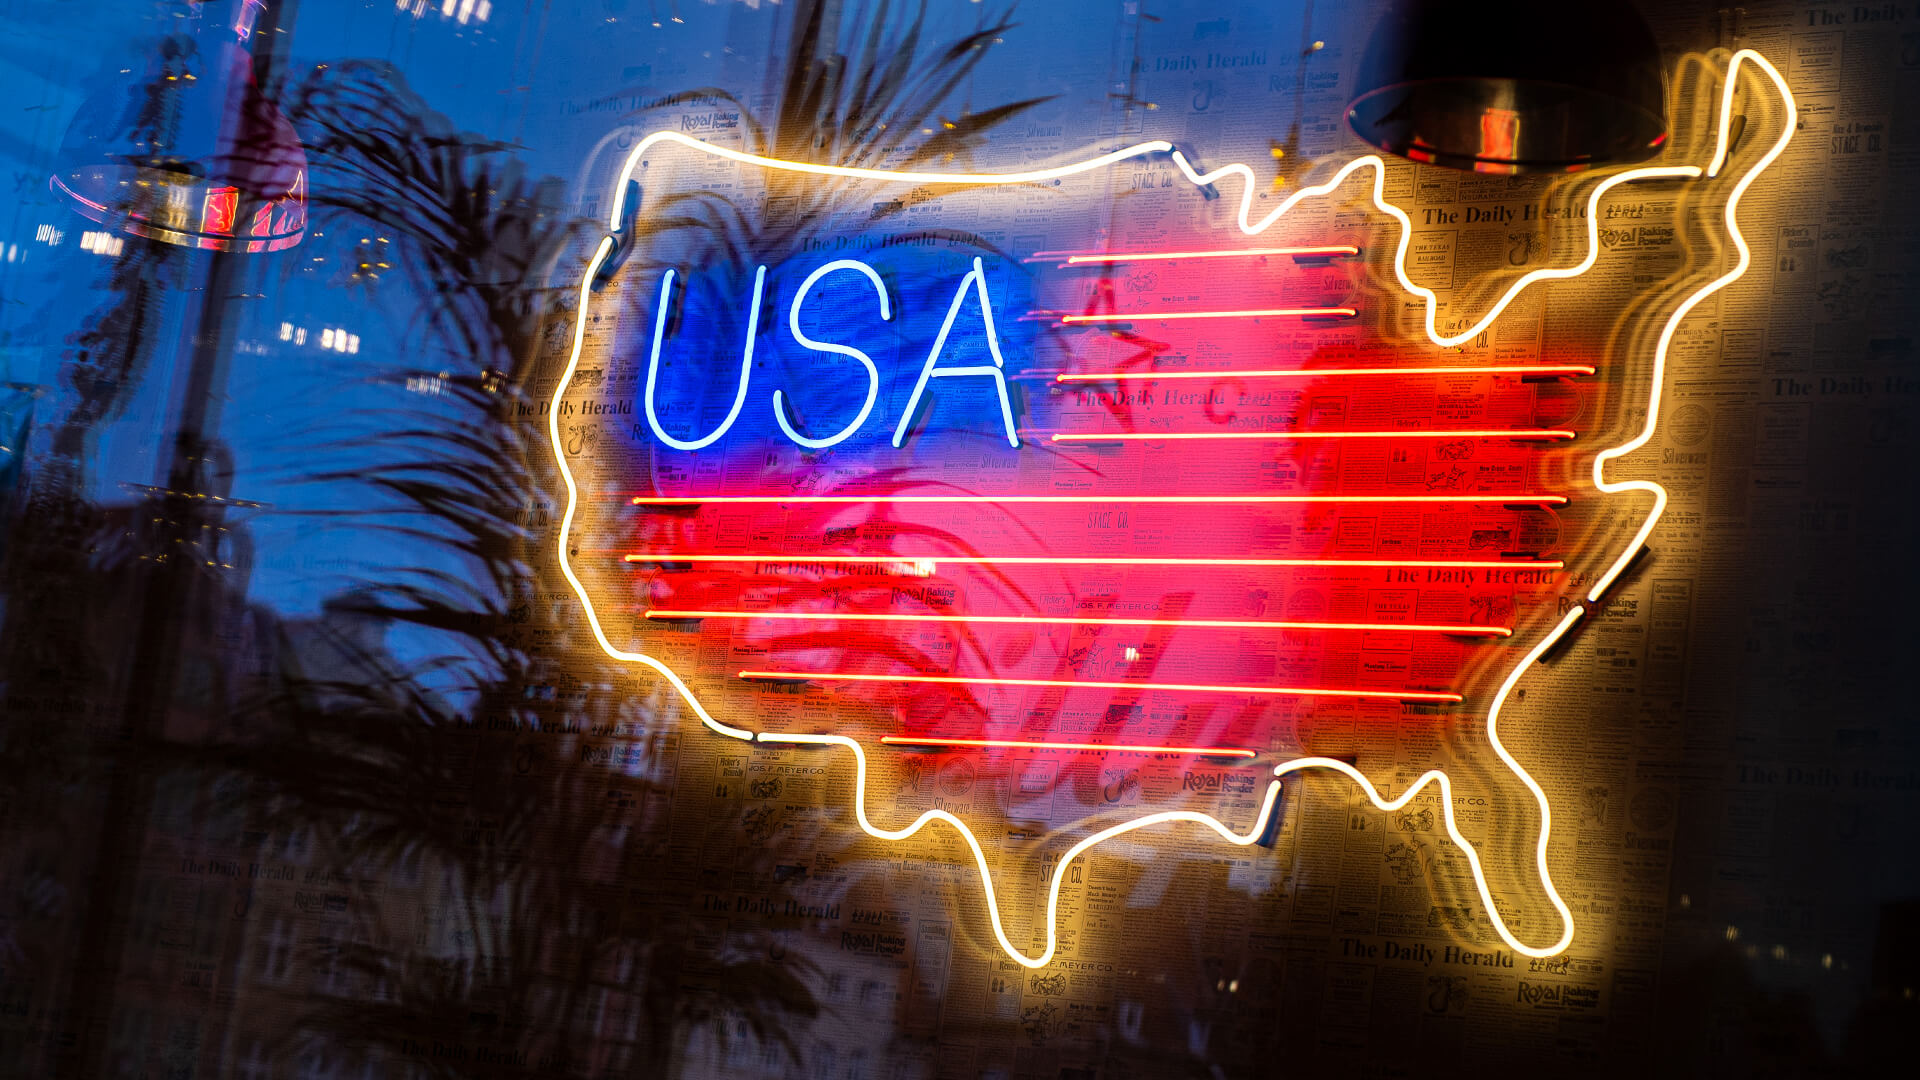 Karte der USA - USA Karte, Neon, Farbe, Zeichen, Neon Hersteller, usa-map-sign-neos